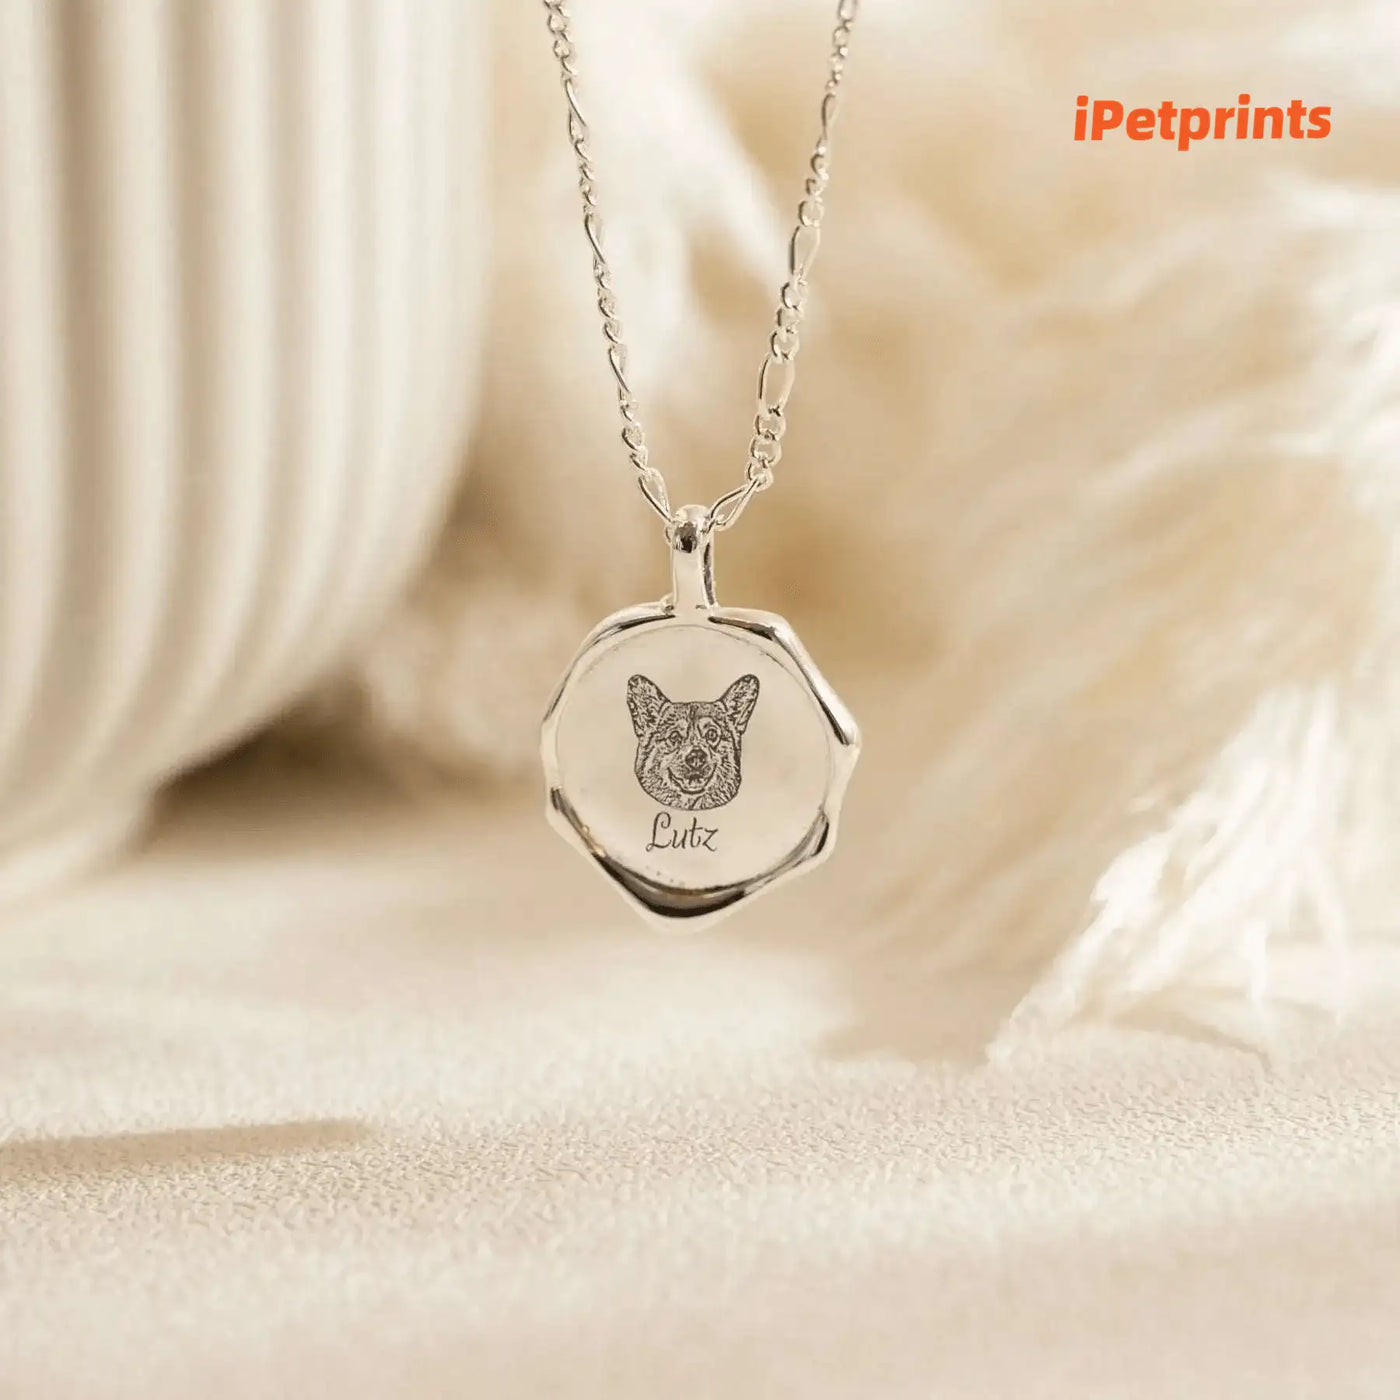 iPetprints Personalized Pet Portrait Necklace